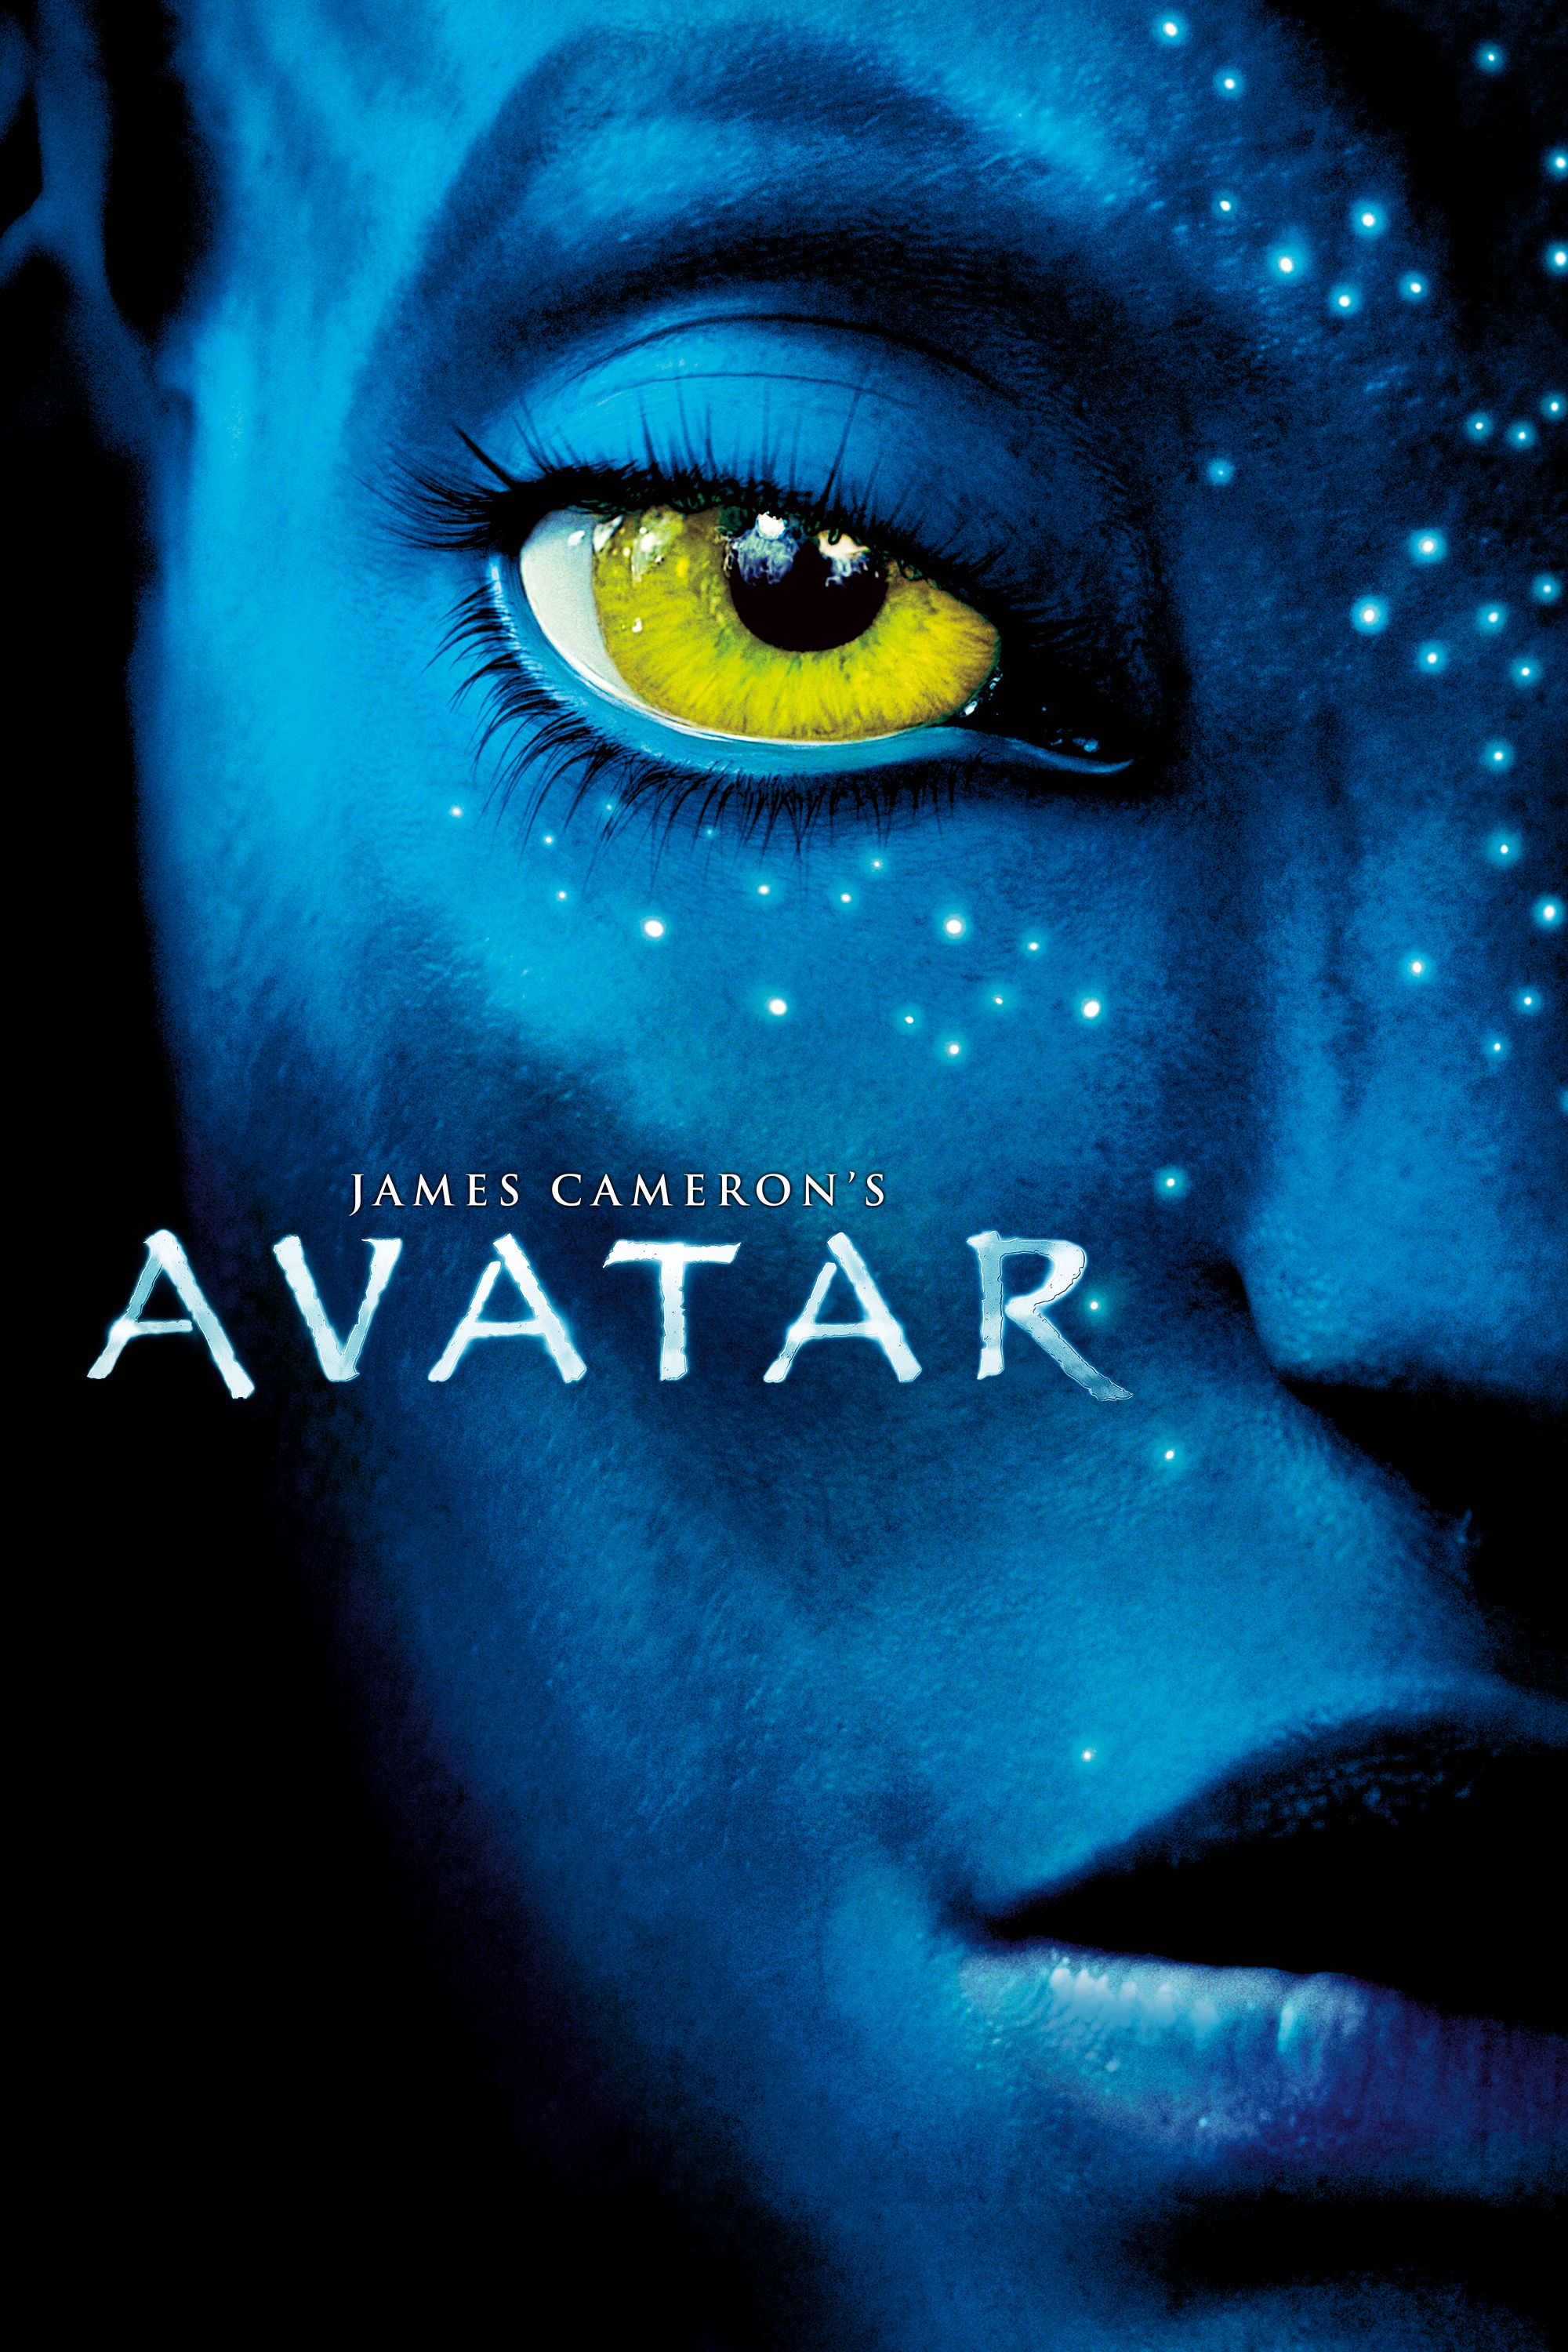 Xem phim 3D Avatar với giá 80000 đồngvé